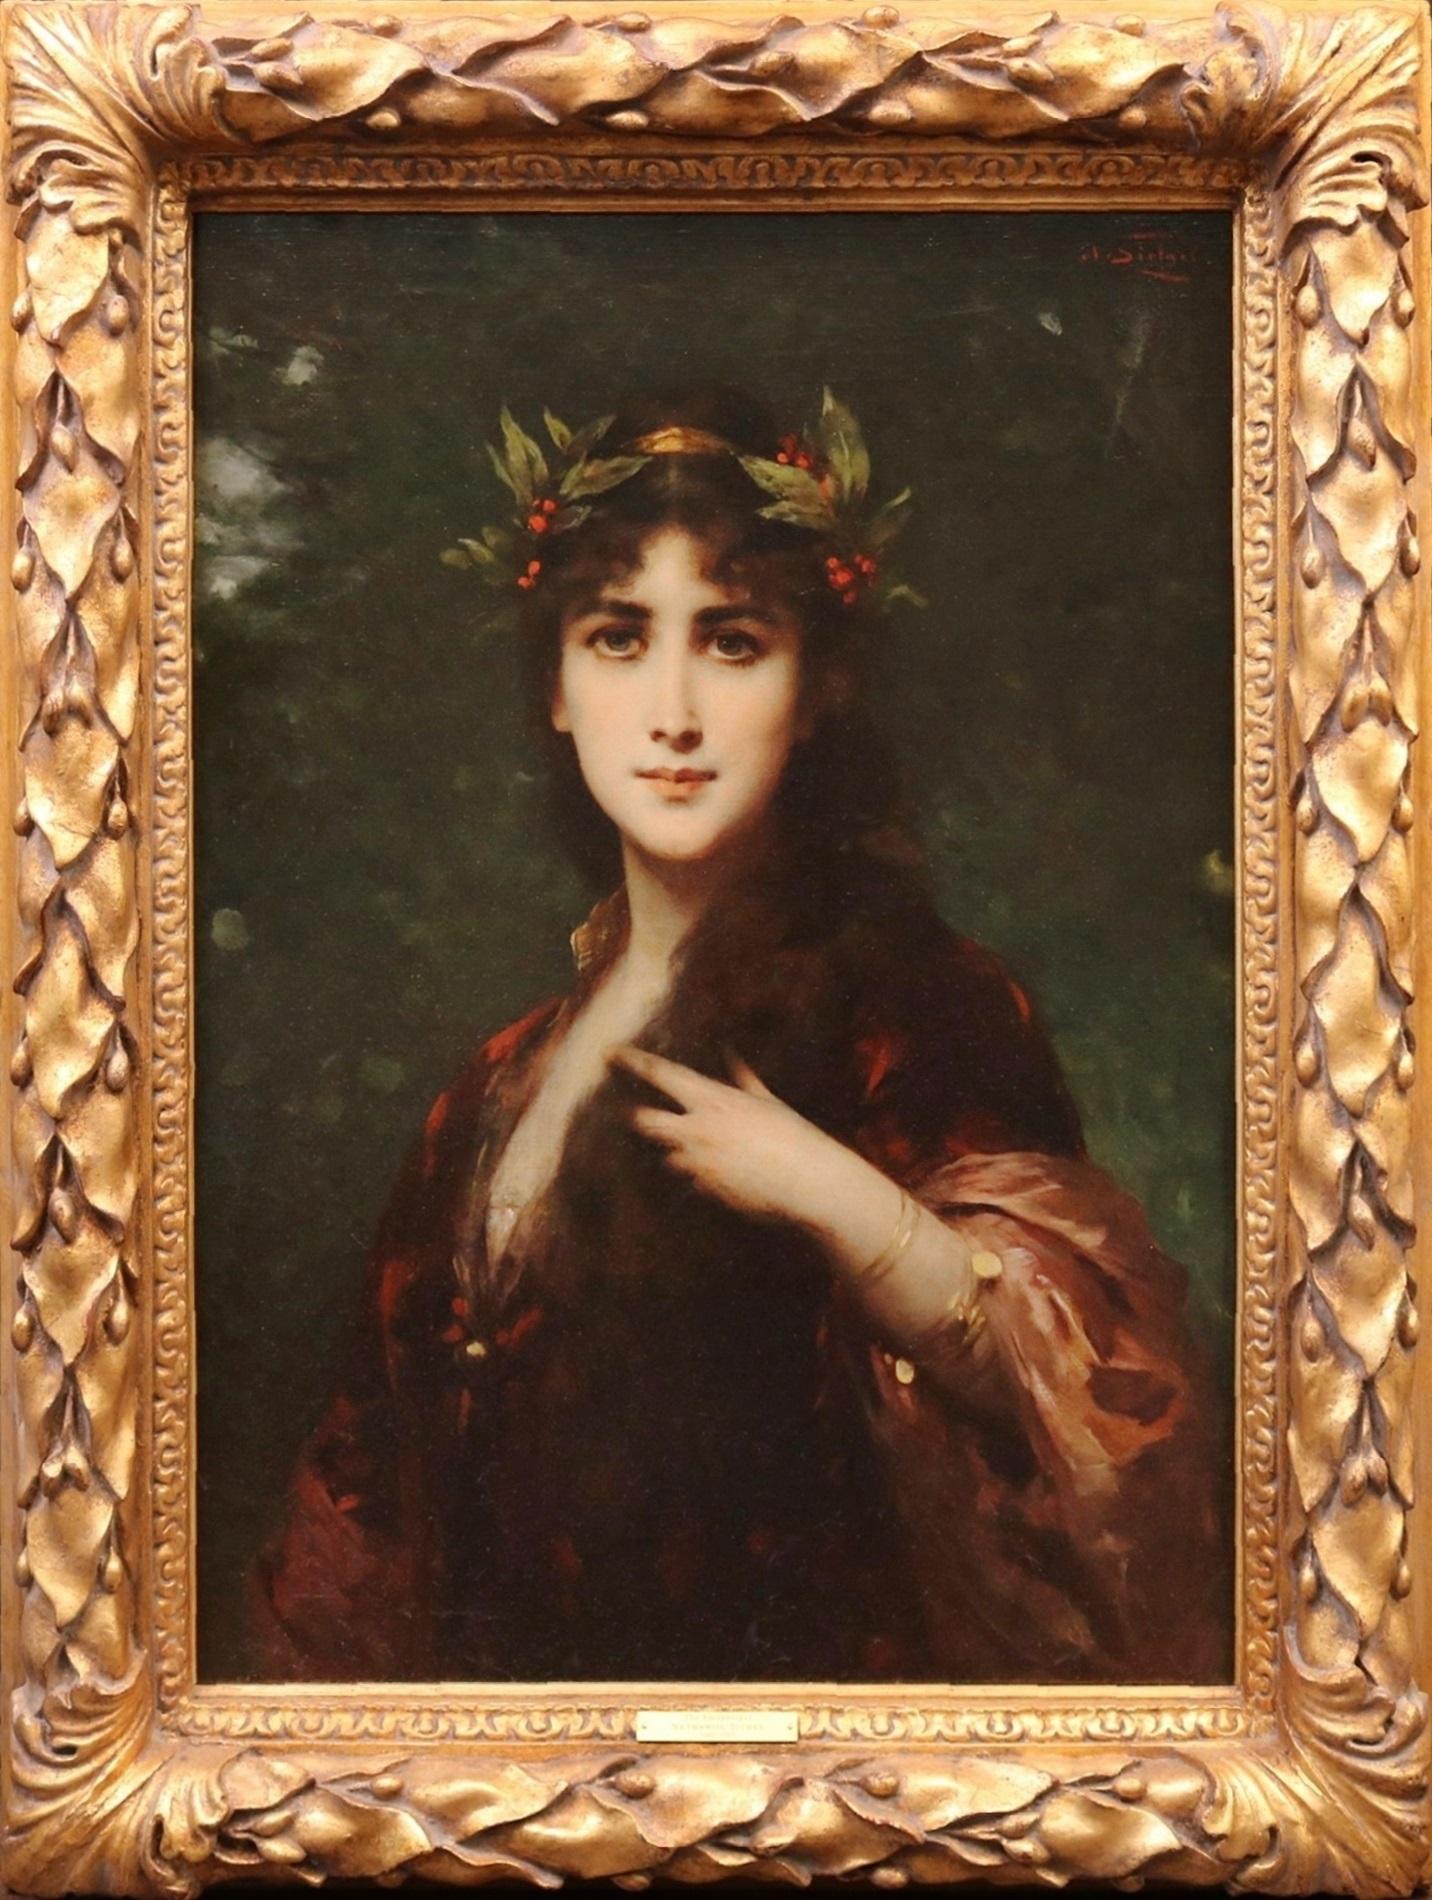 L'Enchanteresse - Peinture à l'huile Belle Époque du 19e siècle - Portrait de beauté française - Painting de Nathaniel Sichel